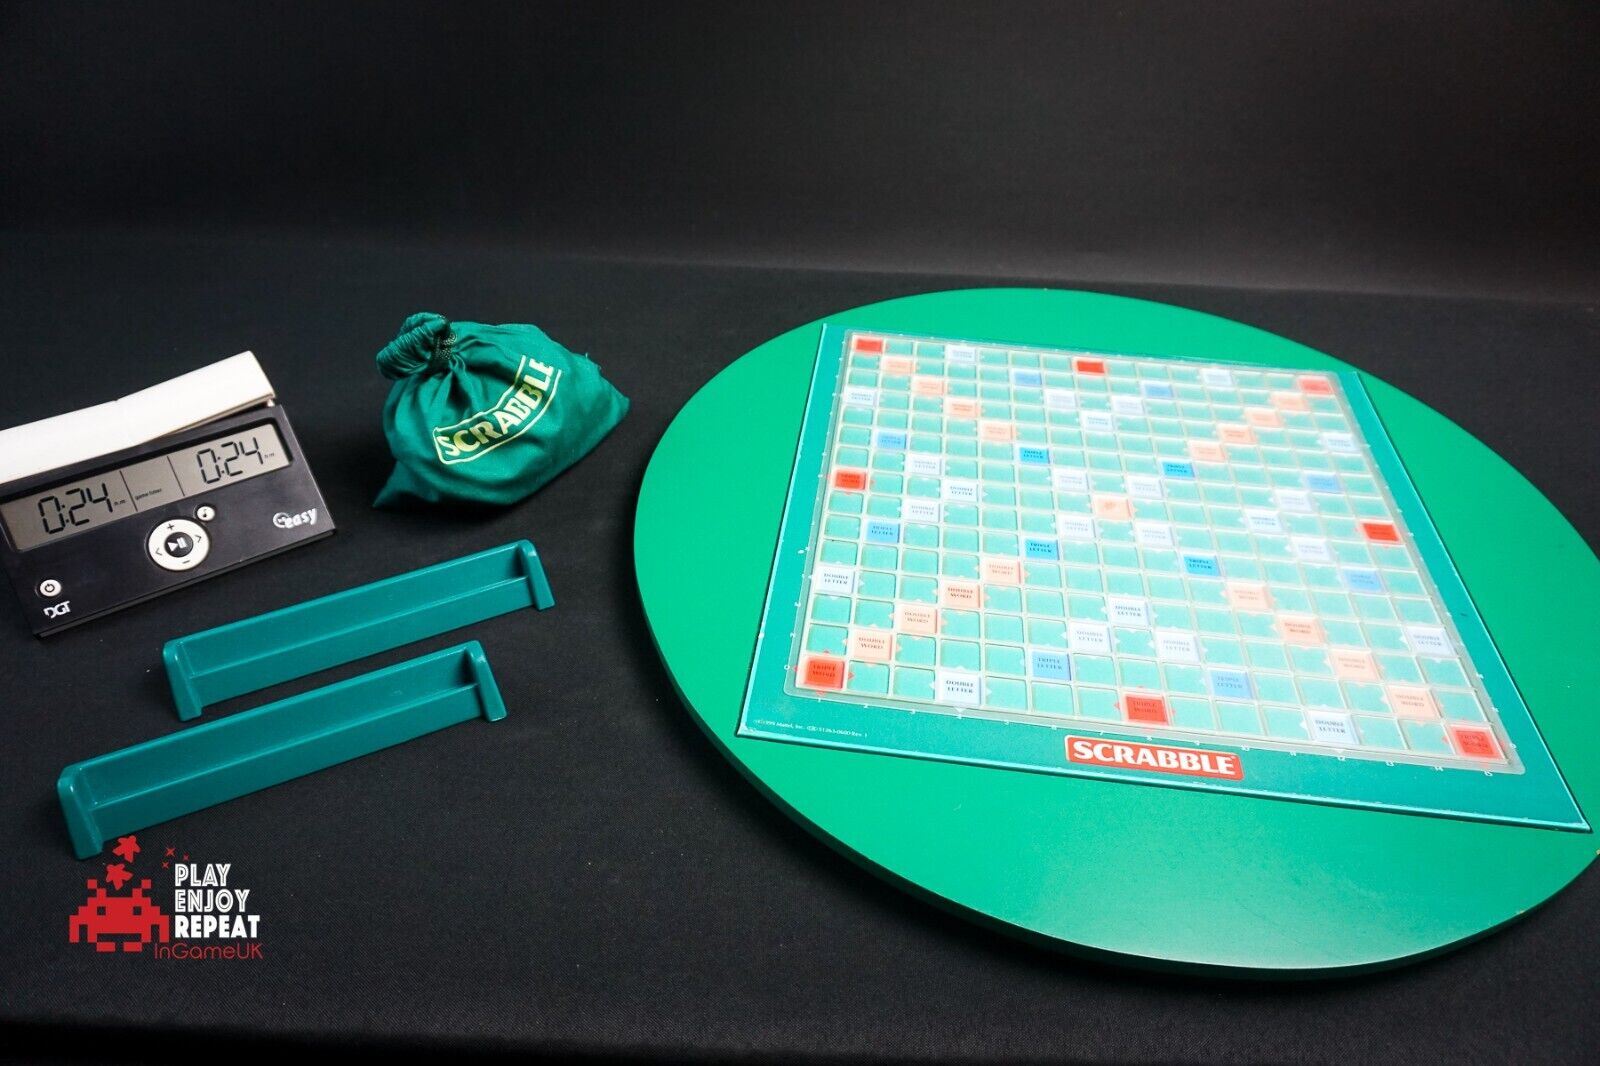 World Scrabble Championship 2018 Match Set Limited Edition Torquay FREE UK Post